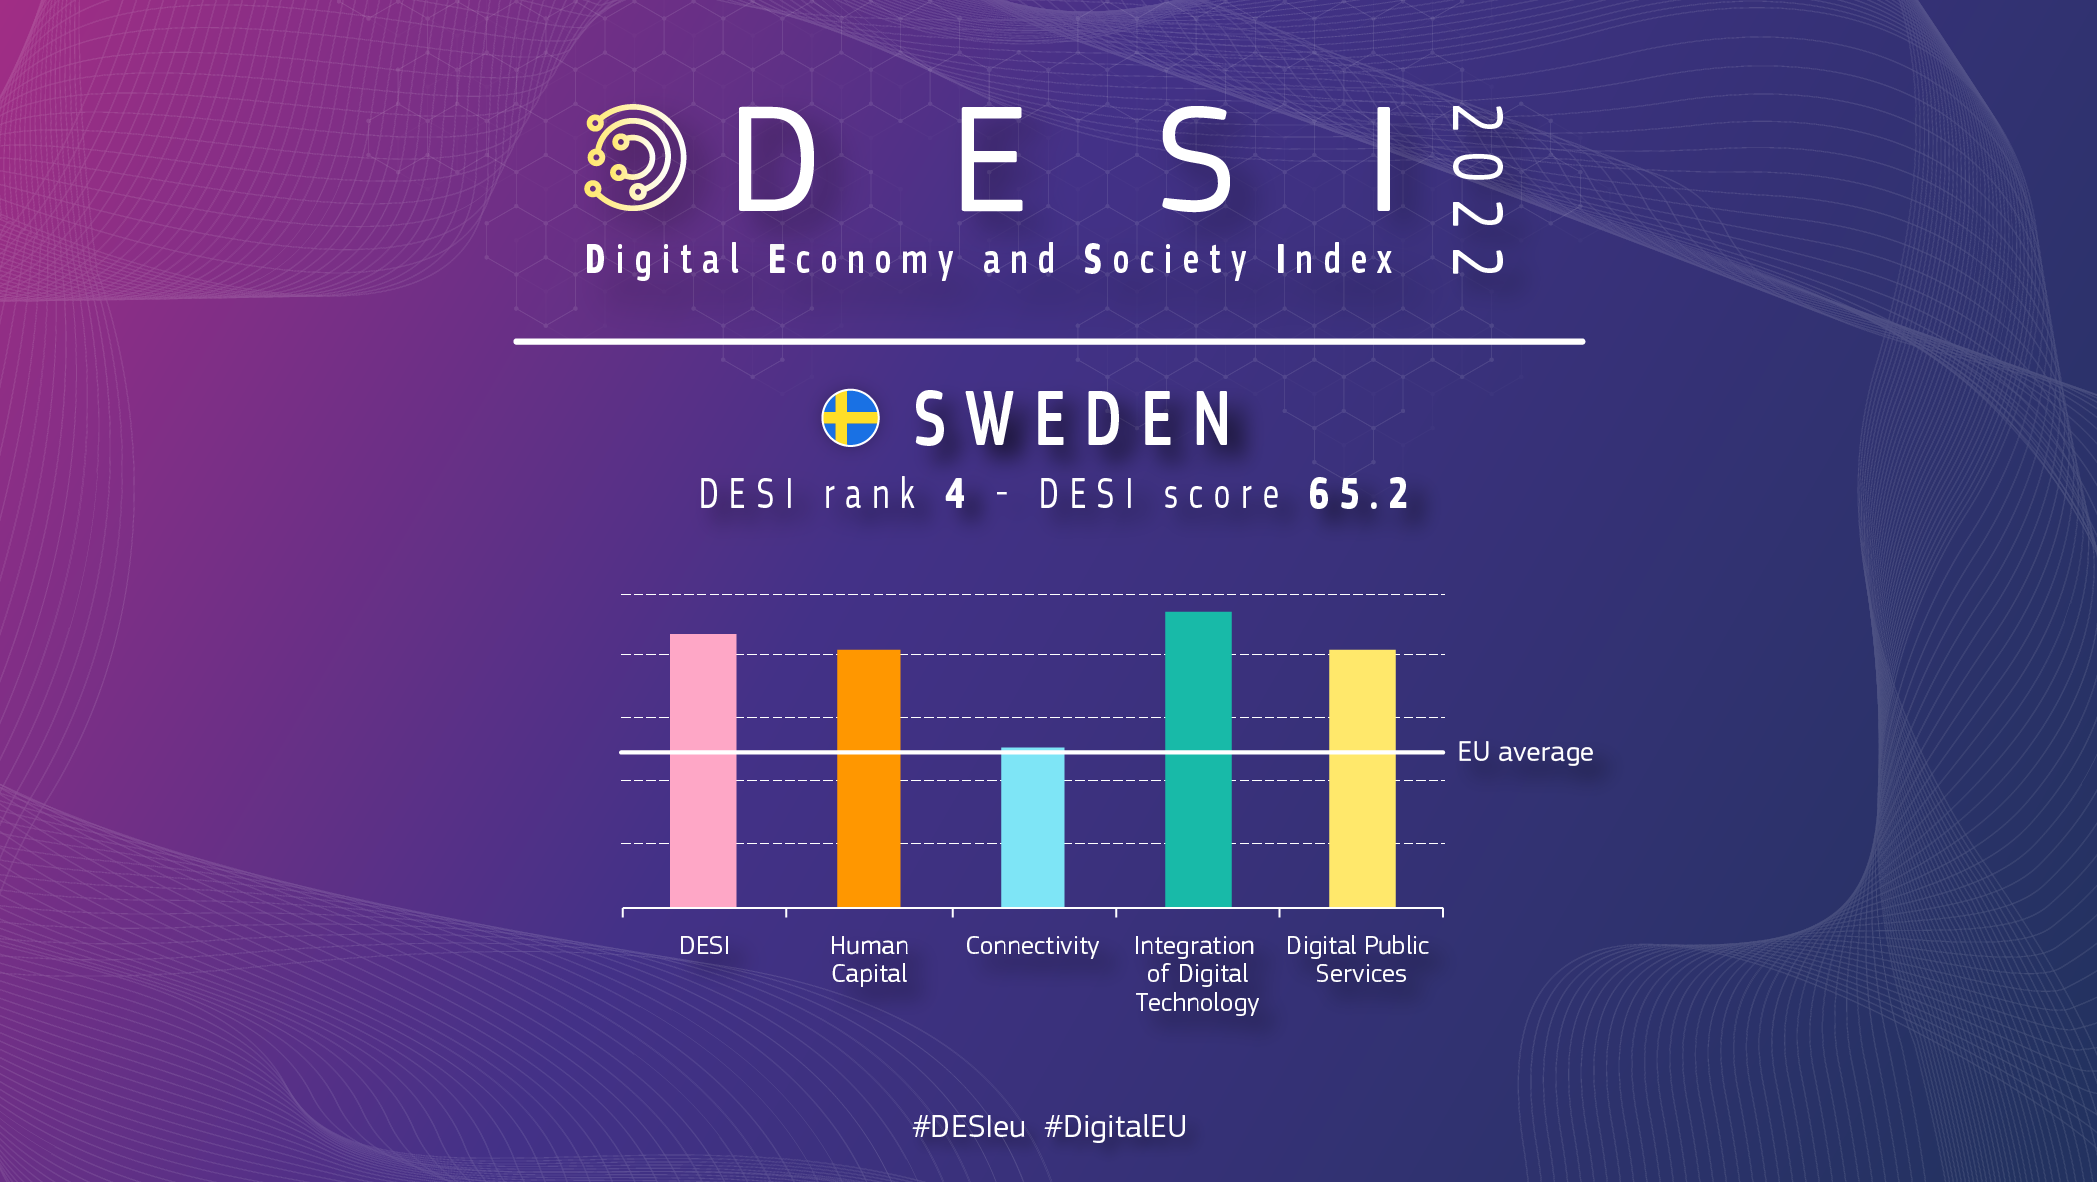 Grafisk oversigt over Sverige i DESI viser en placering på 4 med en score på 65,2